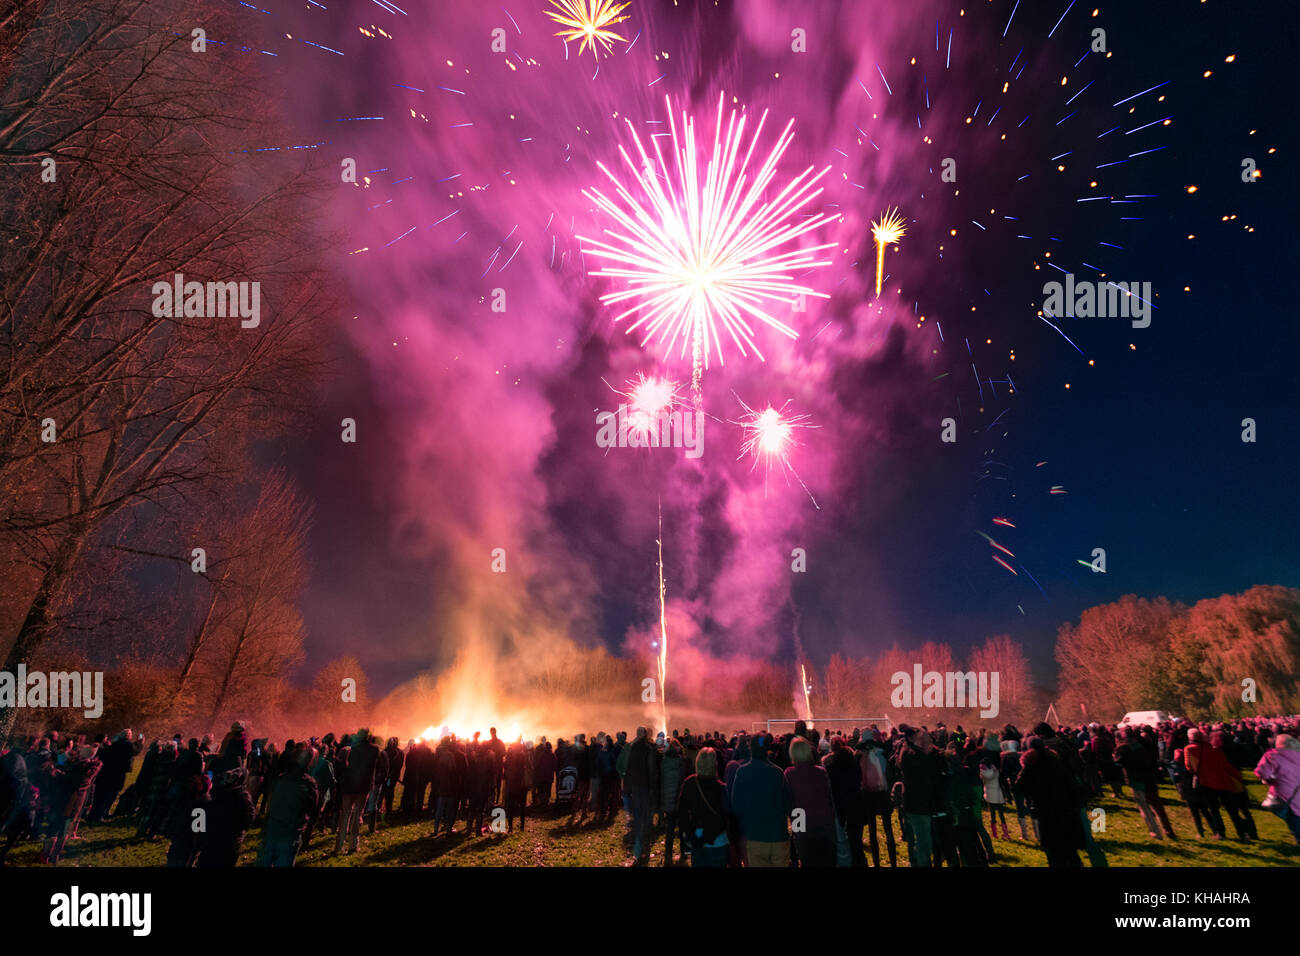 Un feu d'artifice public, organisée pour célébrer le 5 novembre. Tenue à Malmesbury, Wiltshire, Royaume-Uni Banque D'Images